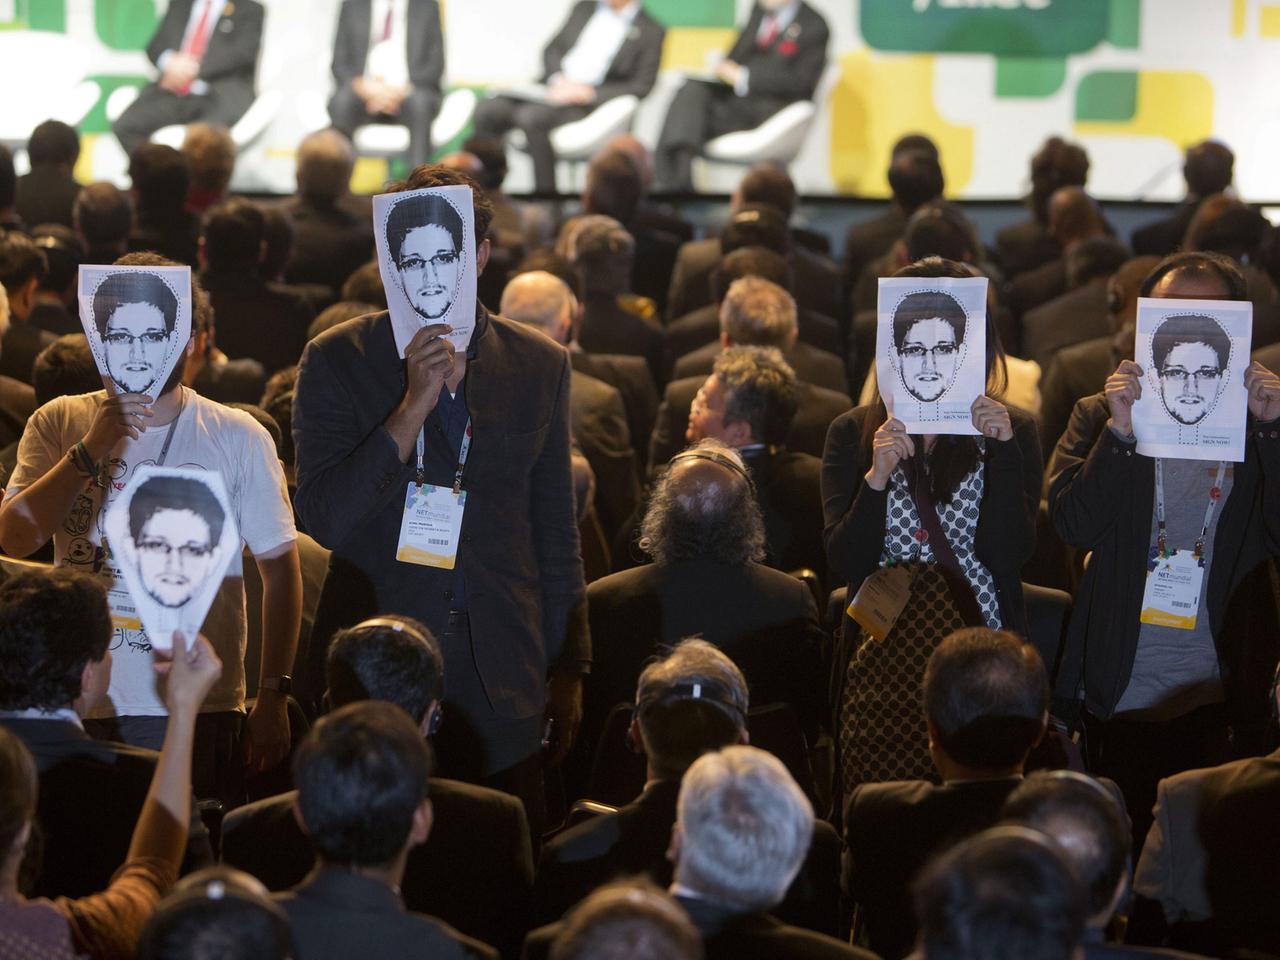 Teilnehmer der Internetkonferenz NETmundial in São Paulo, Brasilien, halten Poster mit dem Porträt des ehemaligen NSA-Mitarbeiters Edward Snowden vor ihr Gesicht.